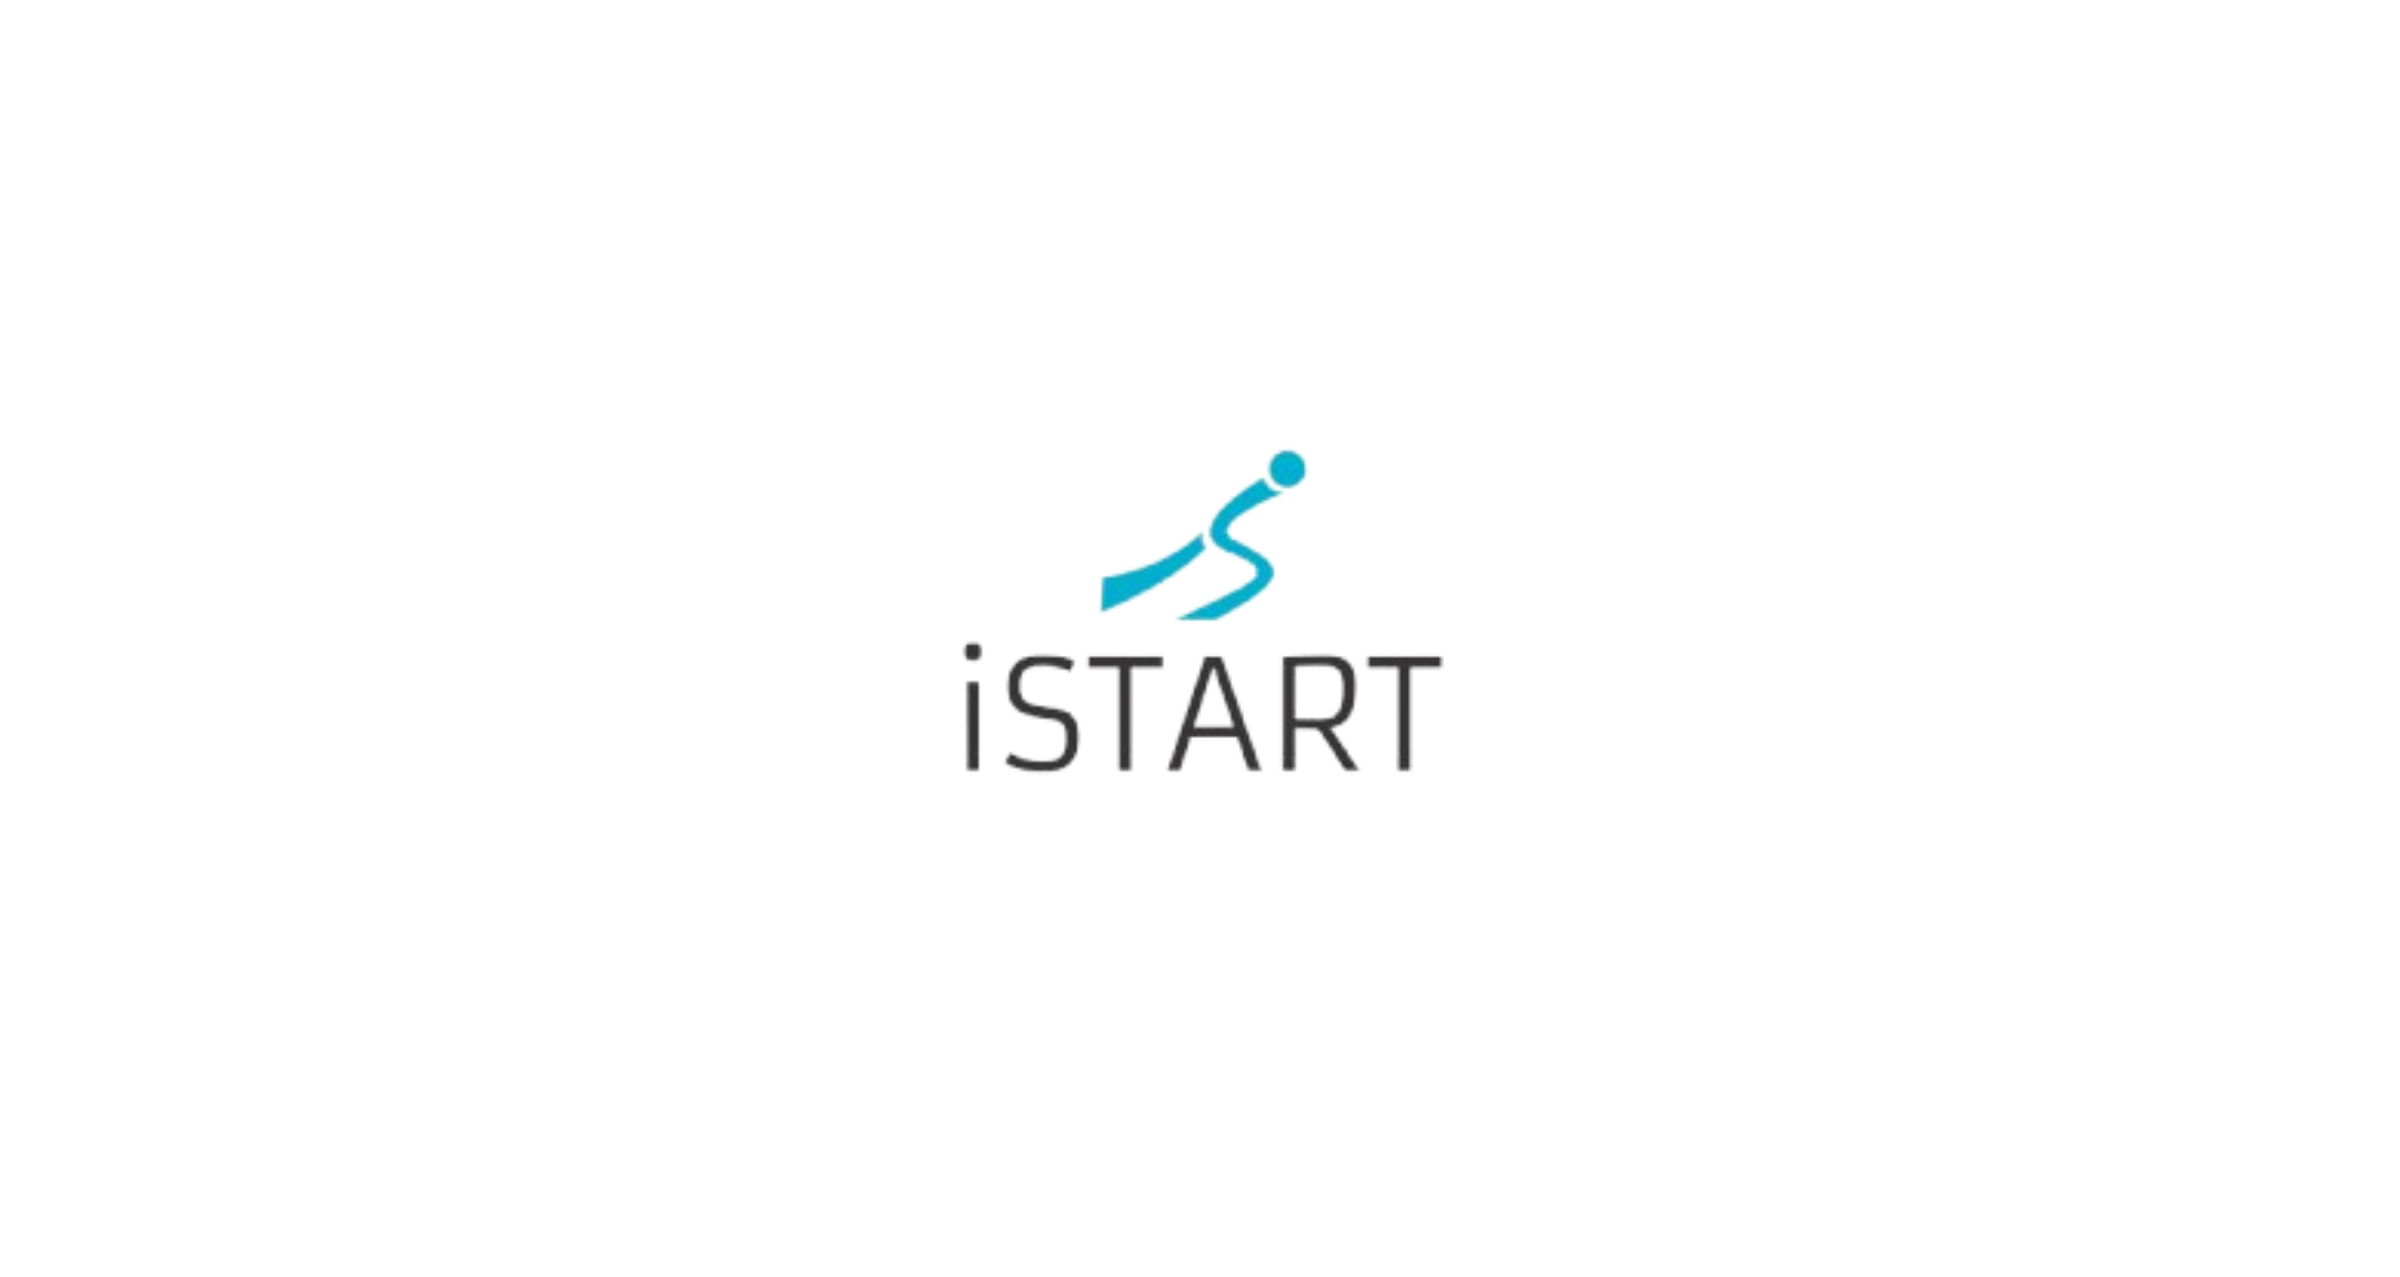 iStart Logo